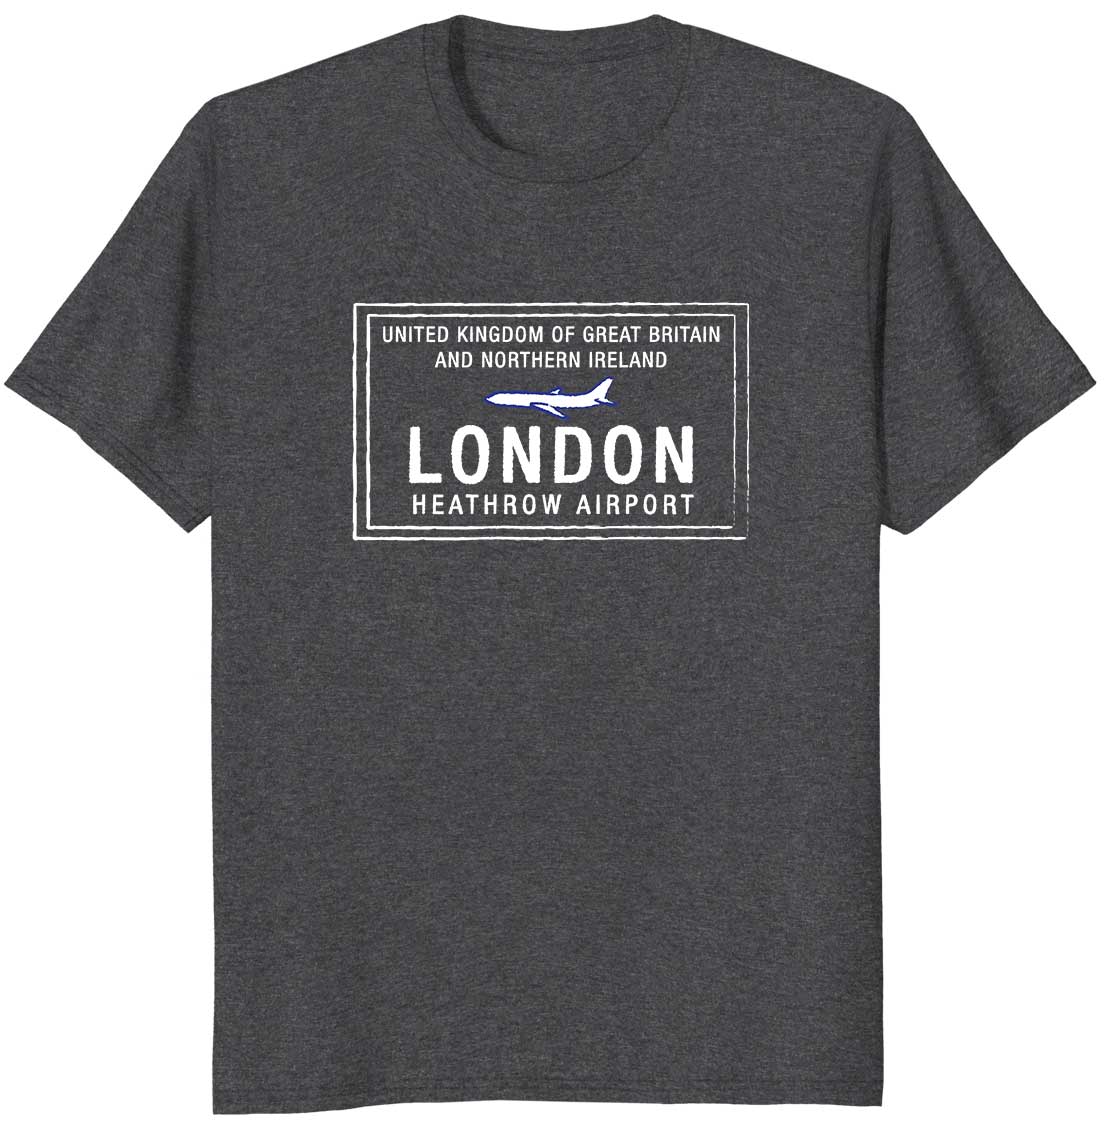 London Heathrow UK Passport Stamp Travel T-shirt